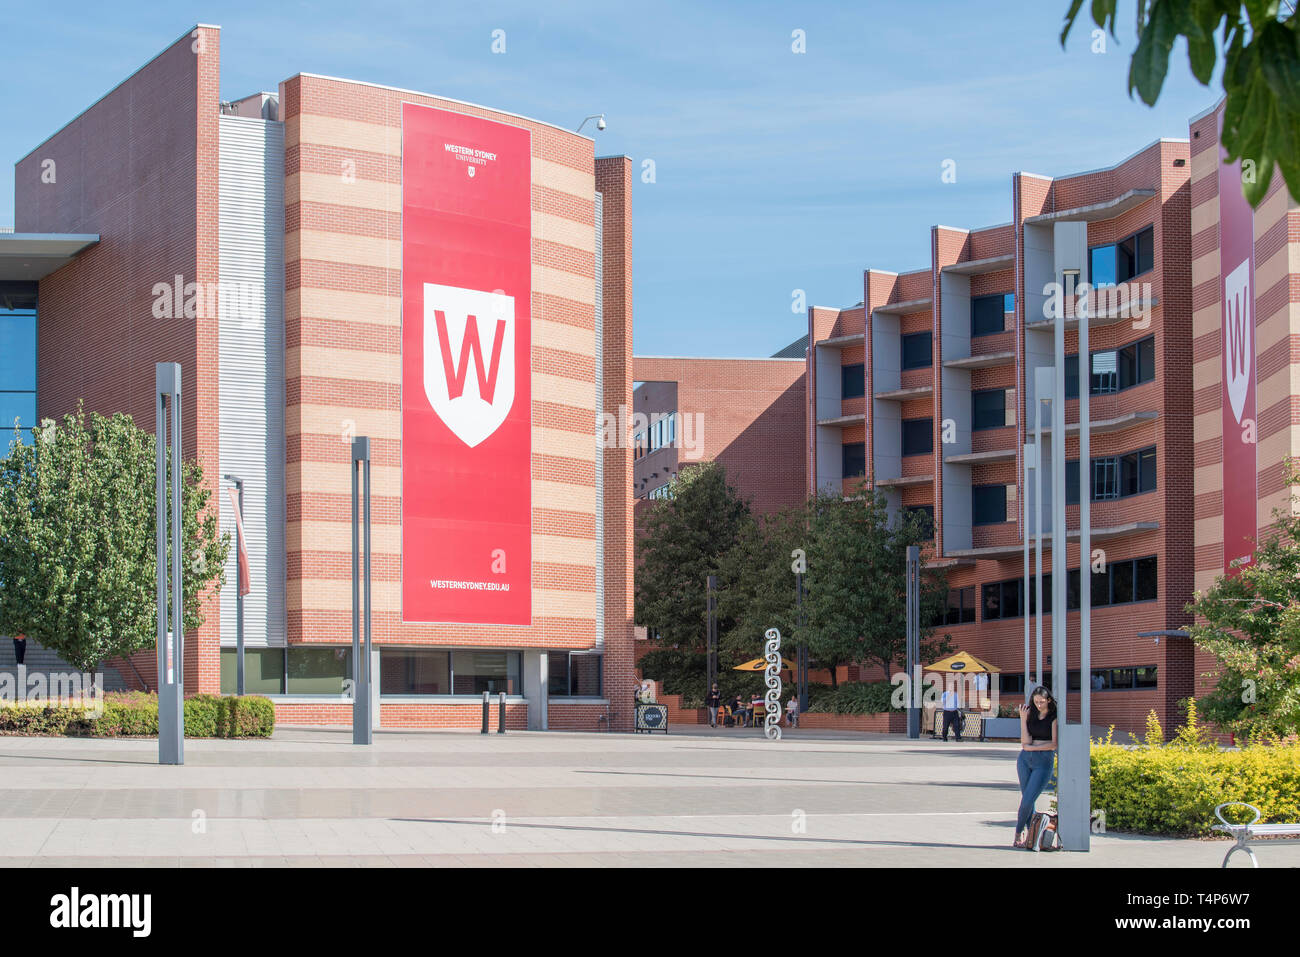 L'affichage du logo à l'ouest de Sydney University (WSU) anciennement à l'UWS Sydney Parramatta Campus sud en Nouvelle Galles du Sud, Australie Banque D'Images